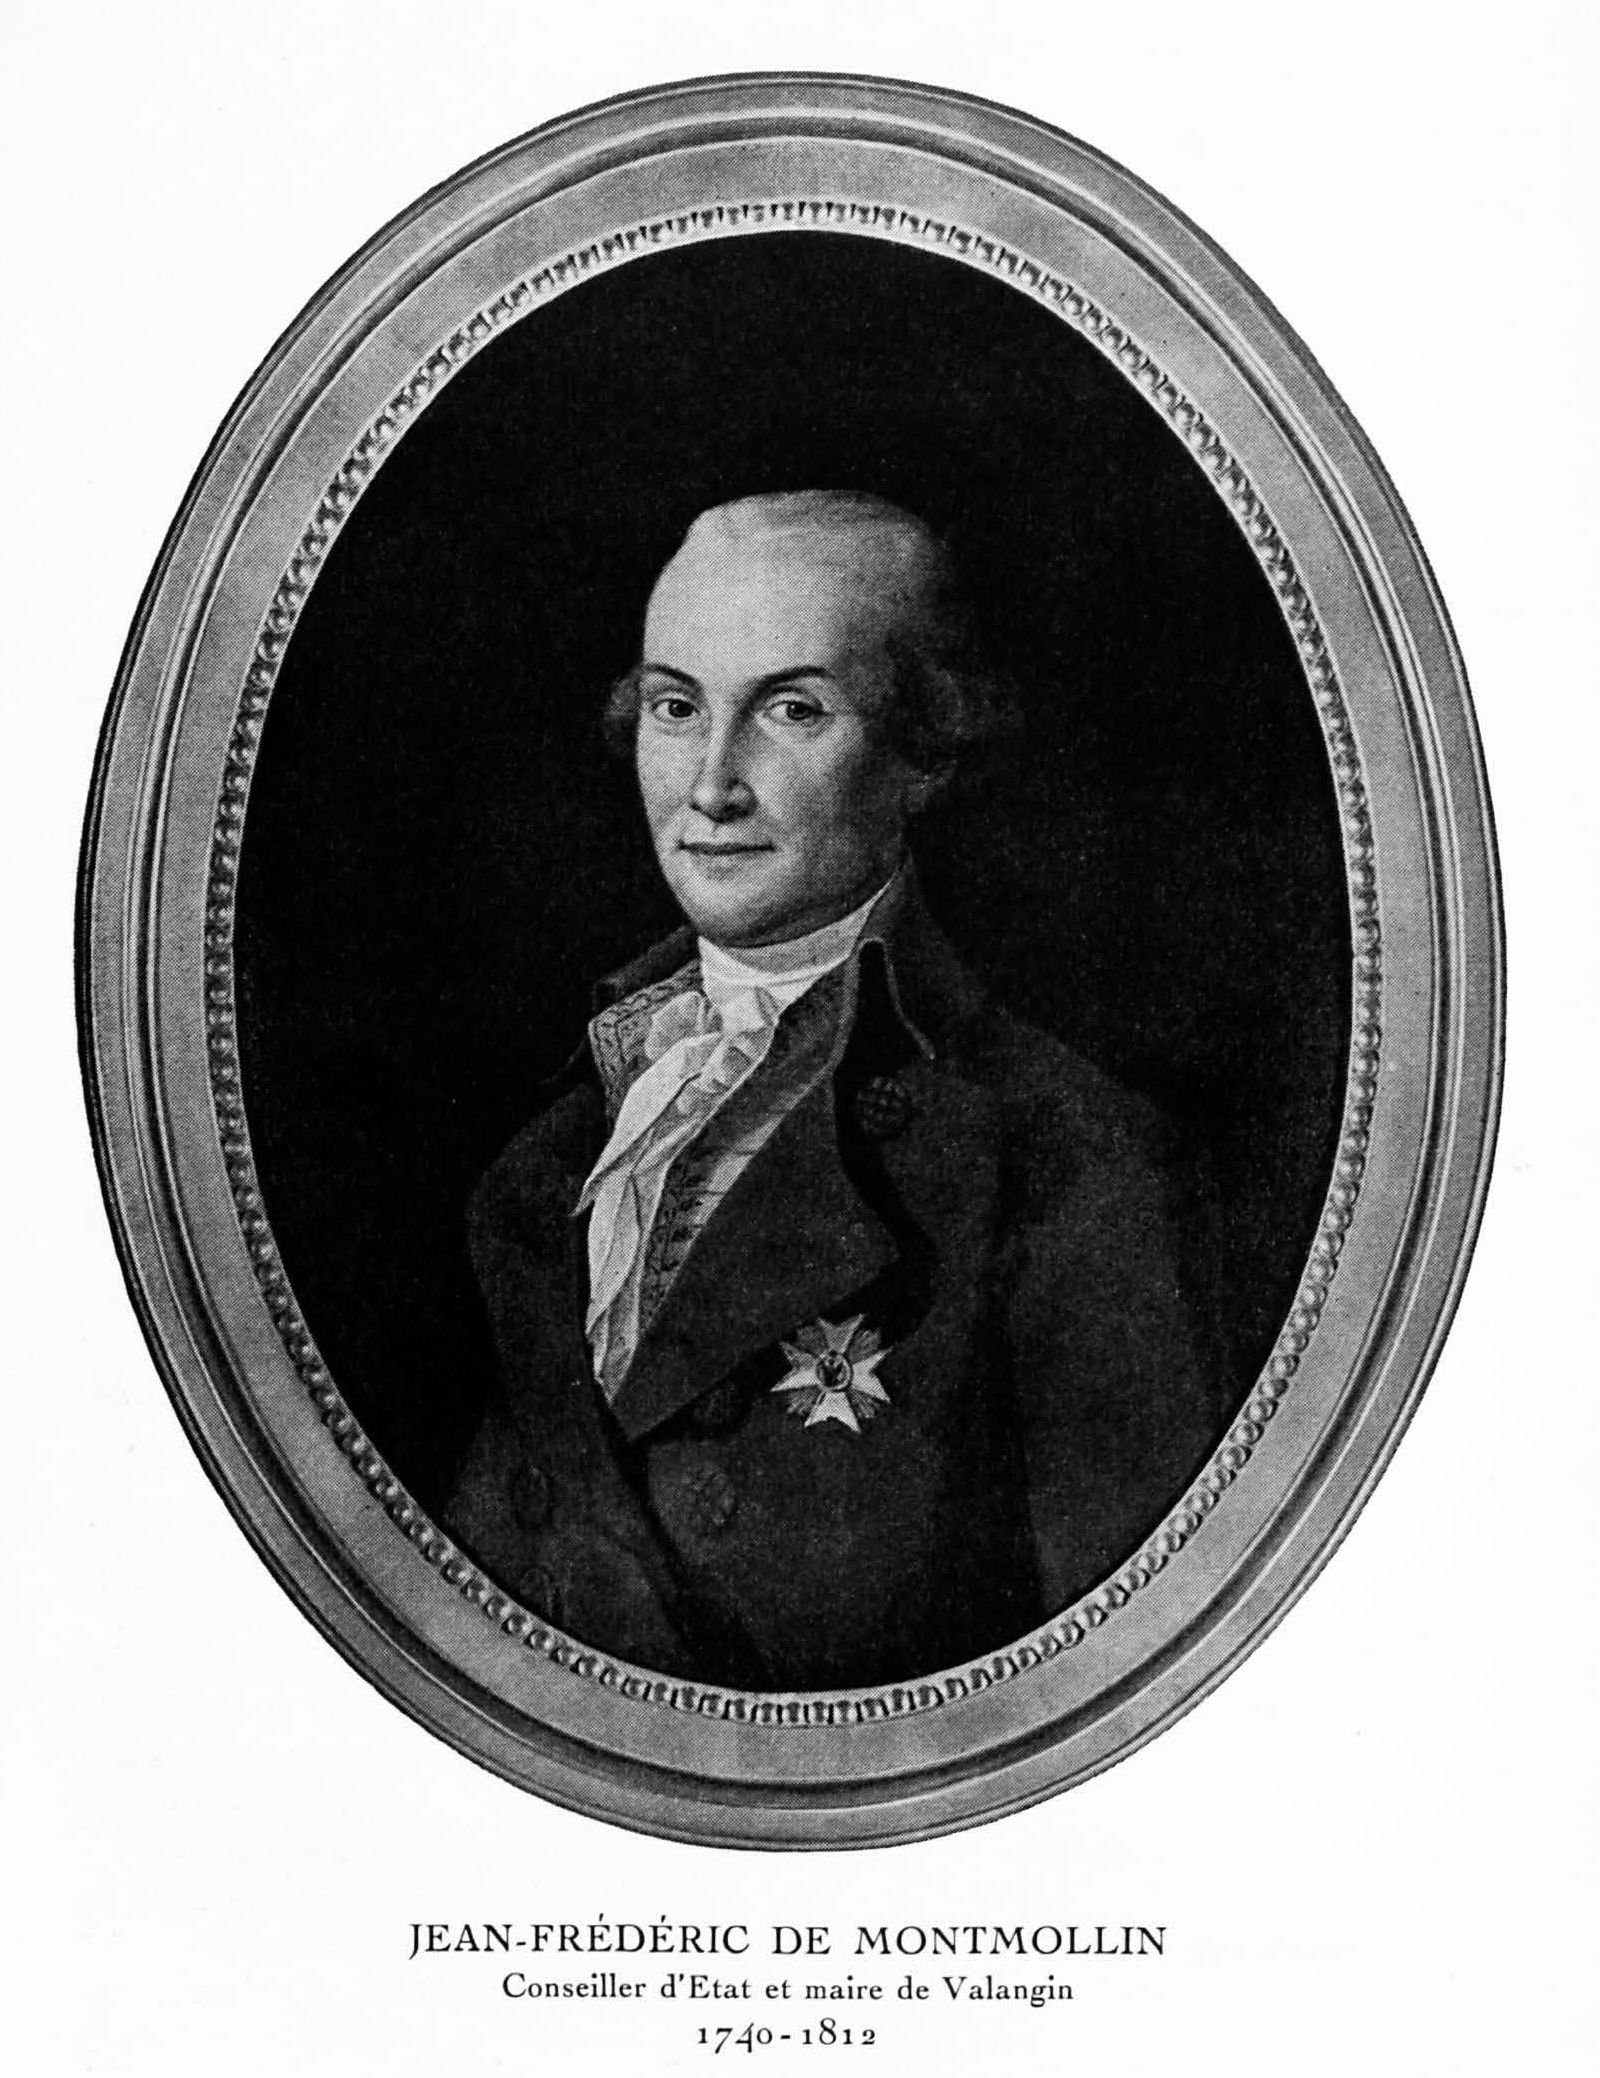 Jean-Frédéric de Montmollin, 1740-1812